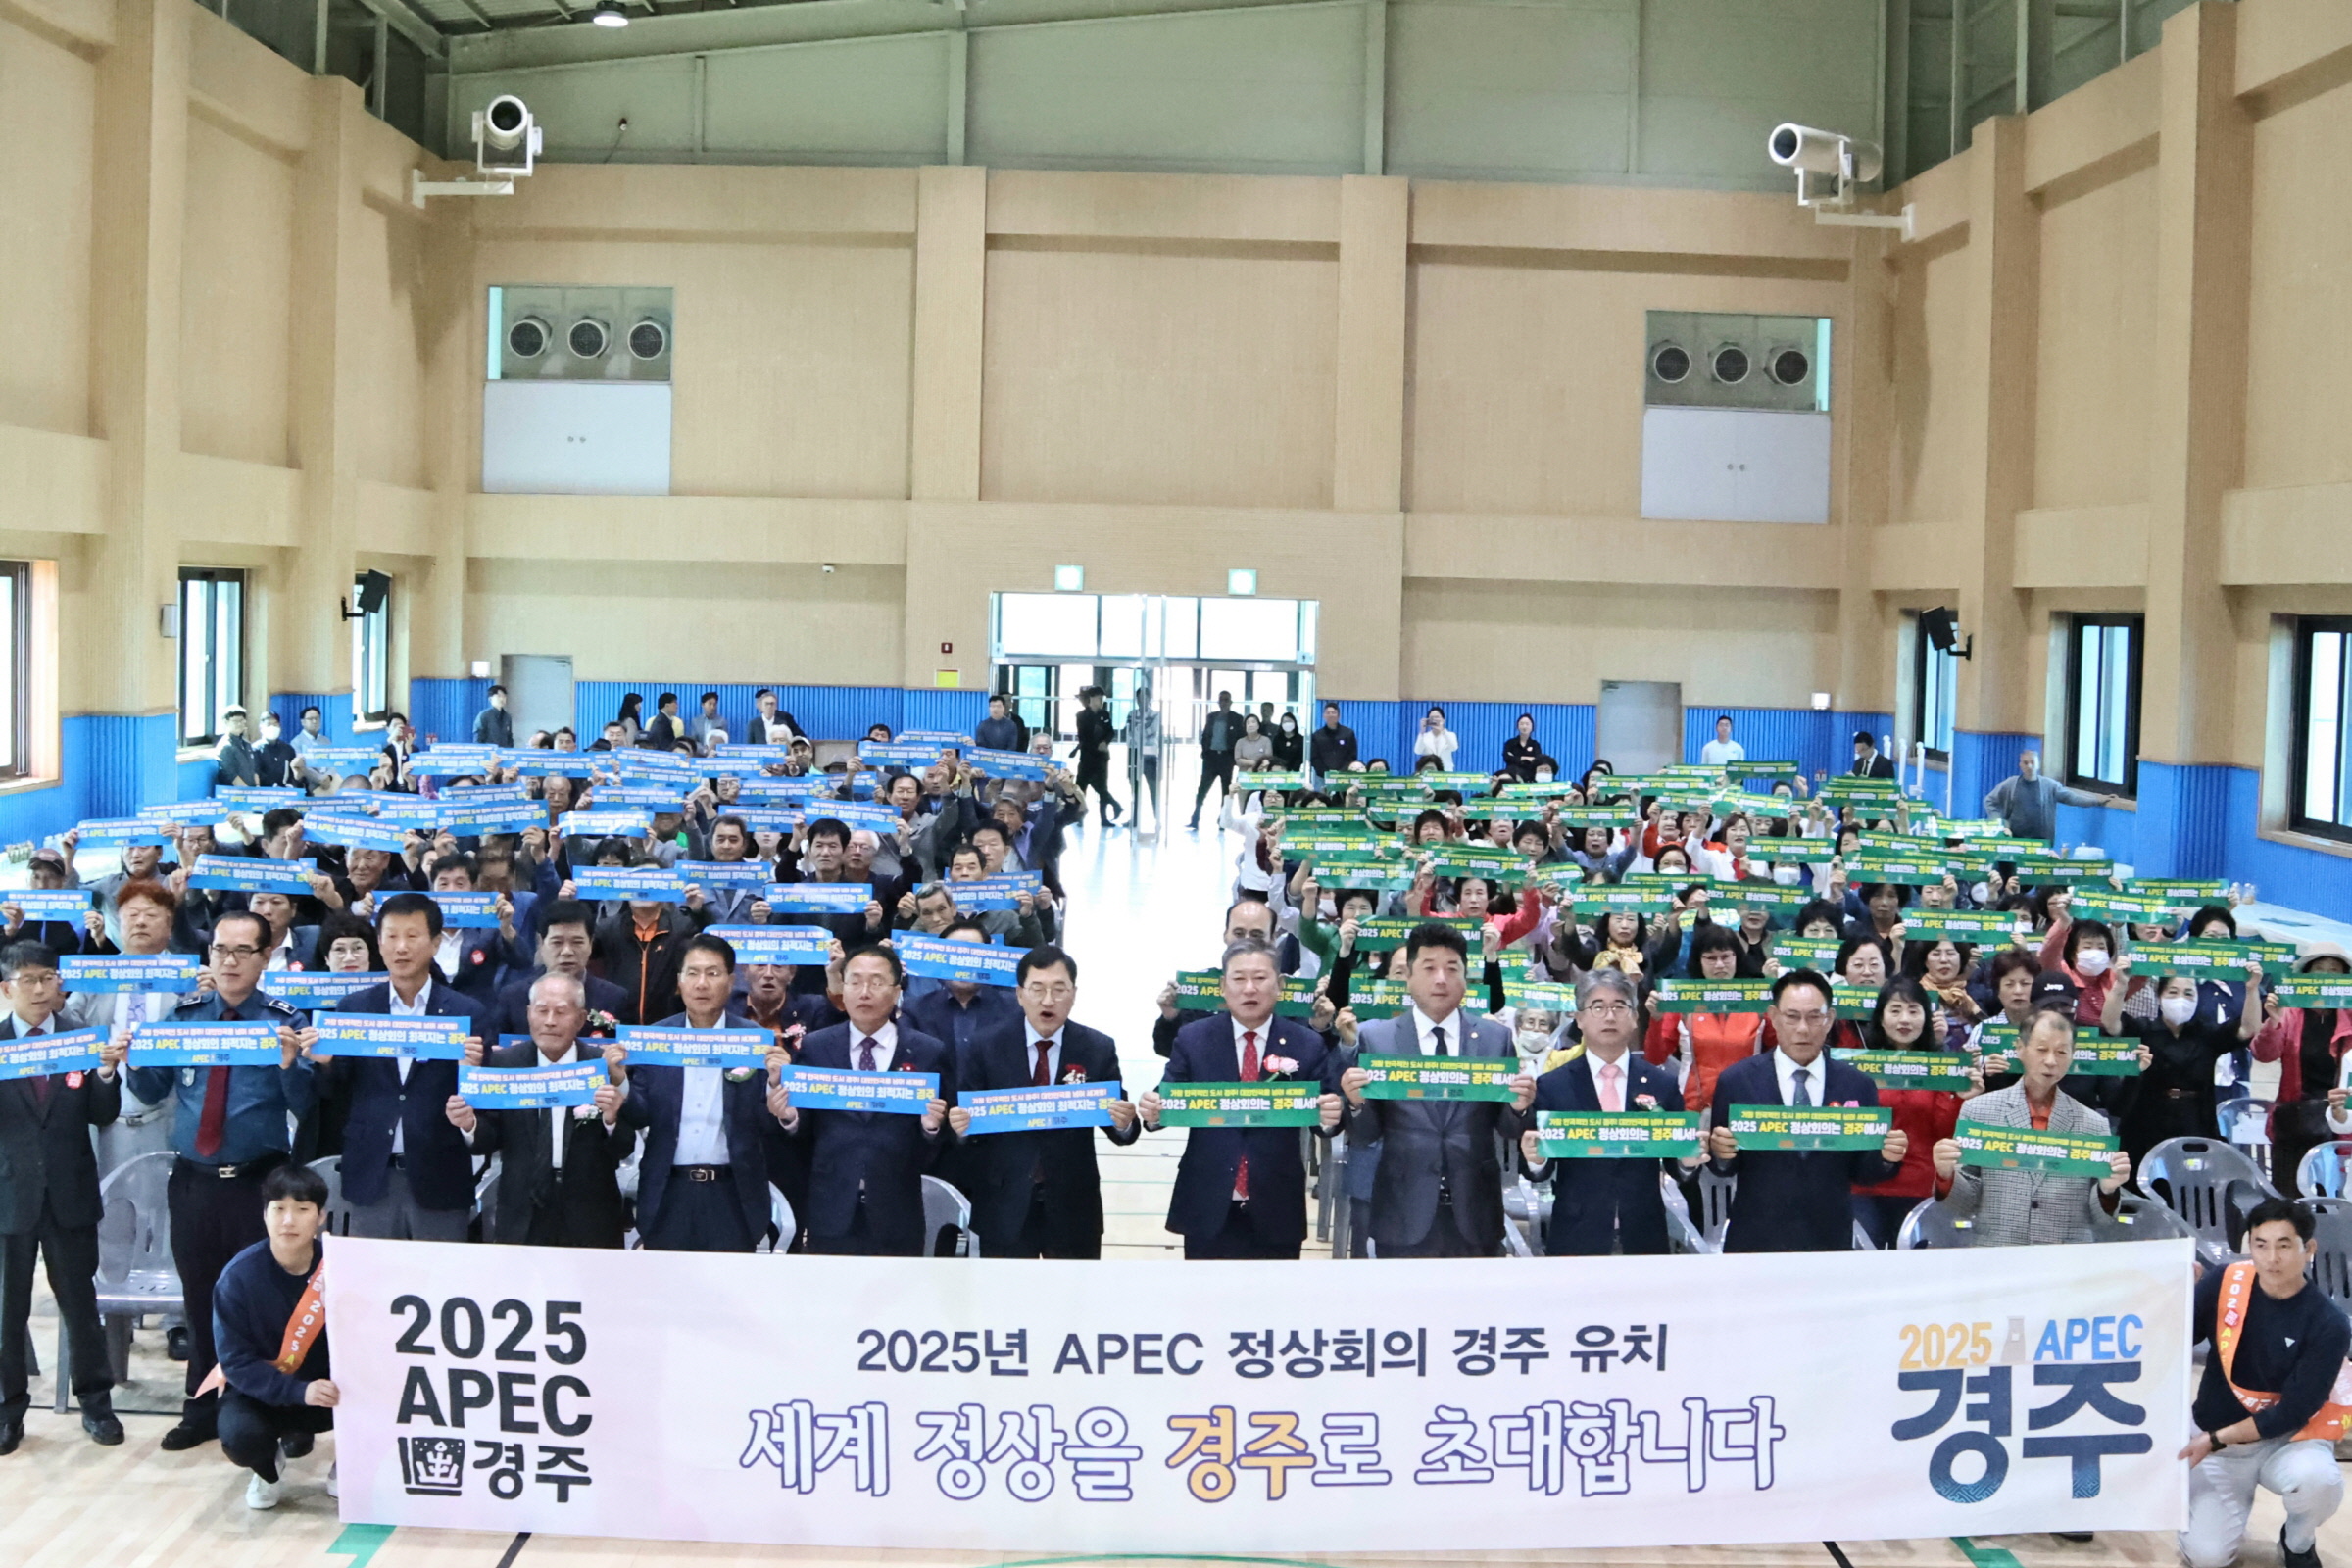 지난 10일에 개최된 천북커뮤니티센터 준공식에서 천북면 직원들이 APEC 정상회의 경주 유치 홍보에 박차를 가했다.